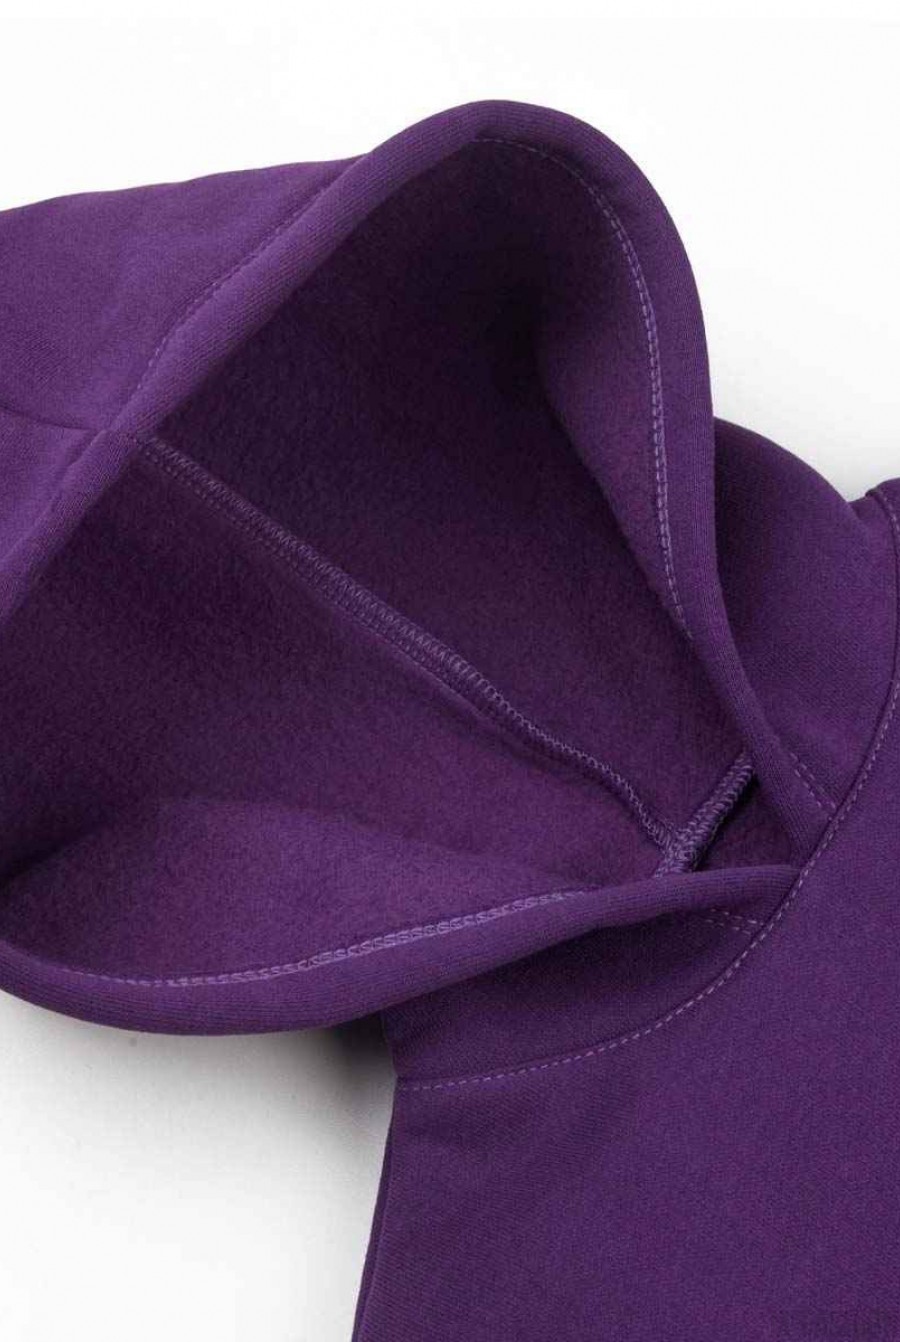 Спортивный костюм из футера с начесом фиолетового цвета- Фото 6